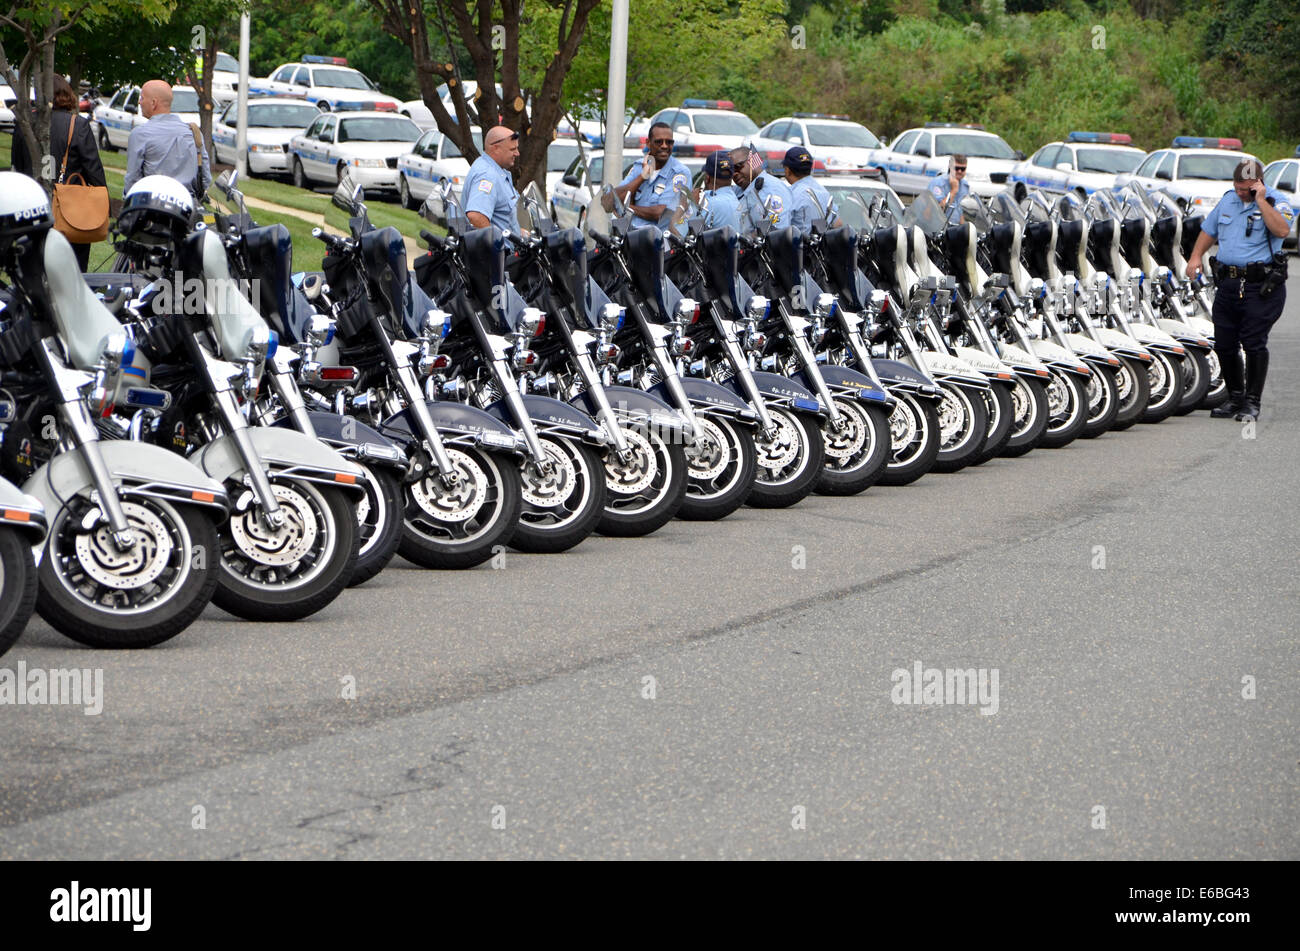 Motos policiales aparcados Foto de stock